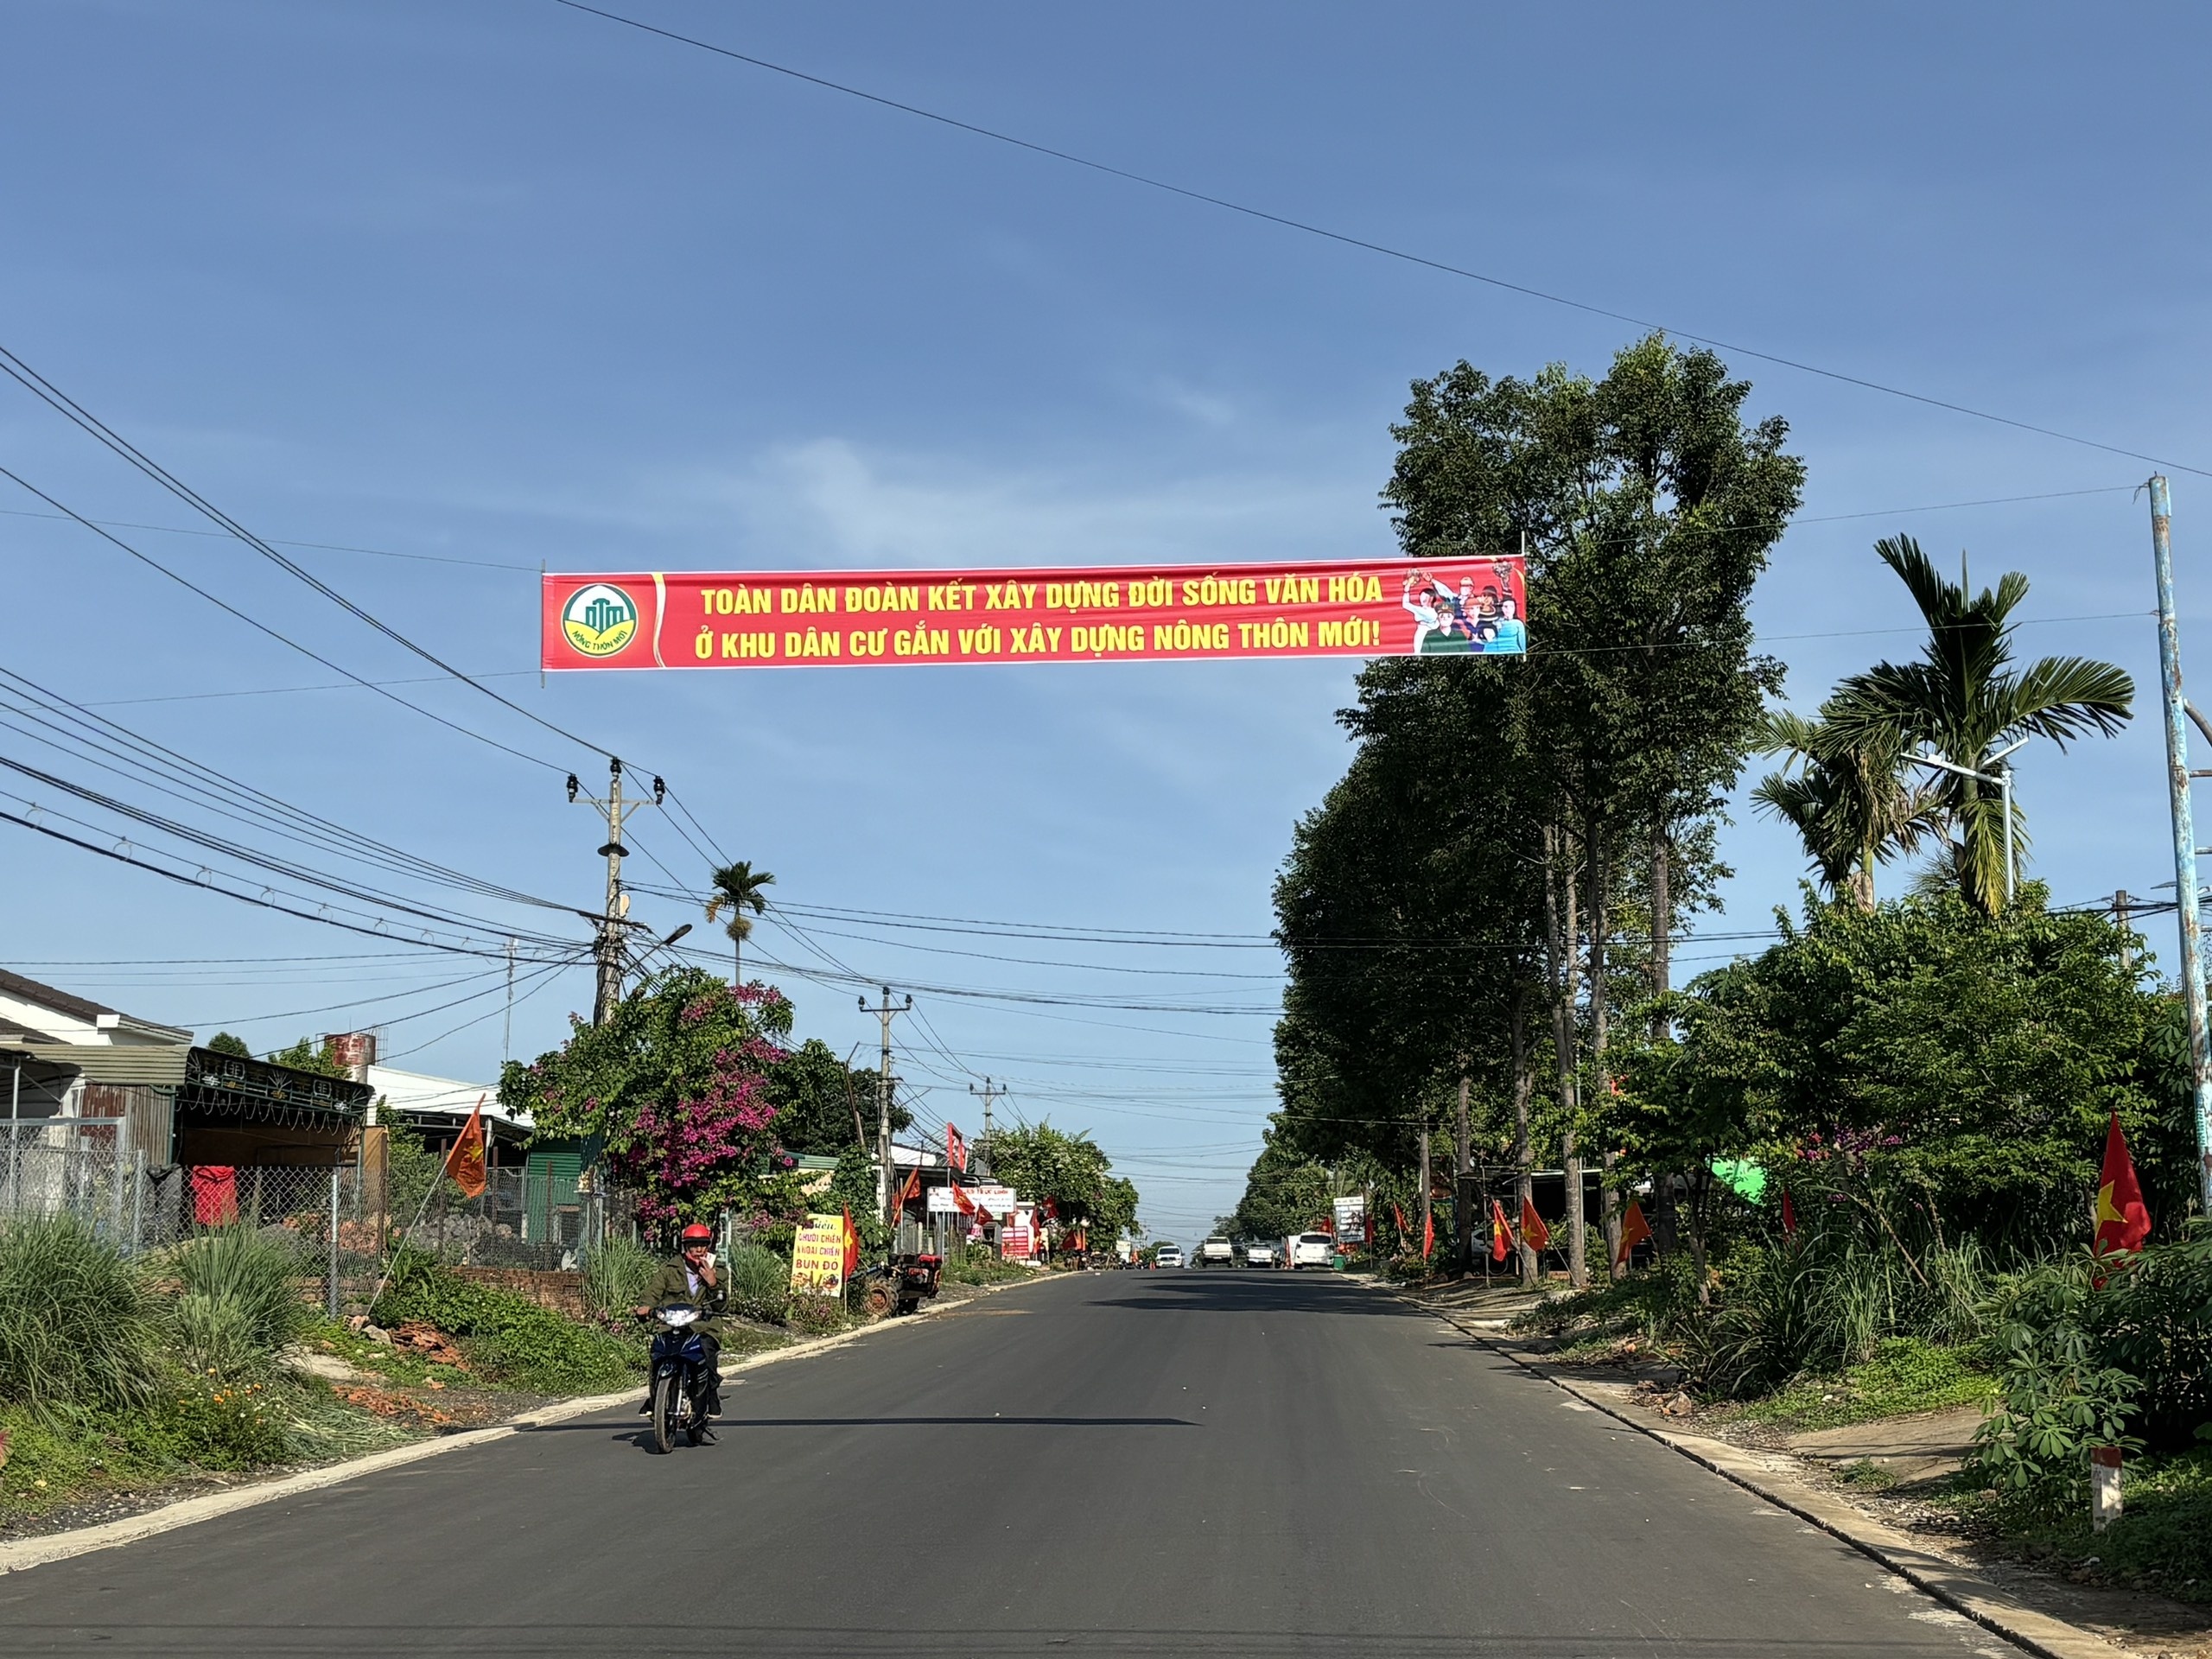 Một xã ở Đắk Nông hoàn thành chỉ tiêu nông thôn mới từ xuất phát điểm "trắng tiêu chí"- Ảnh 1.